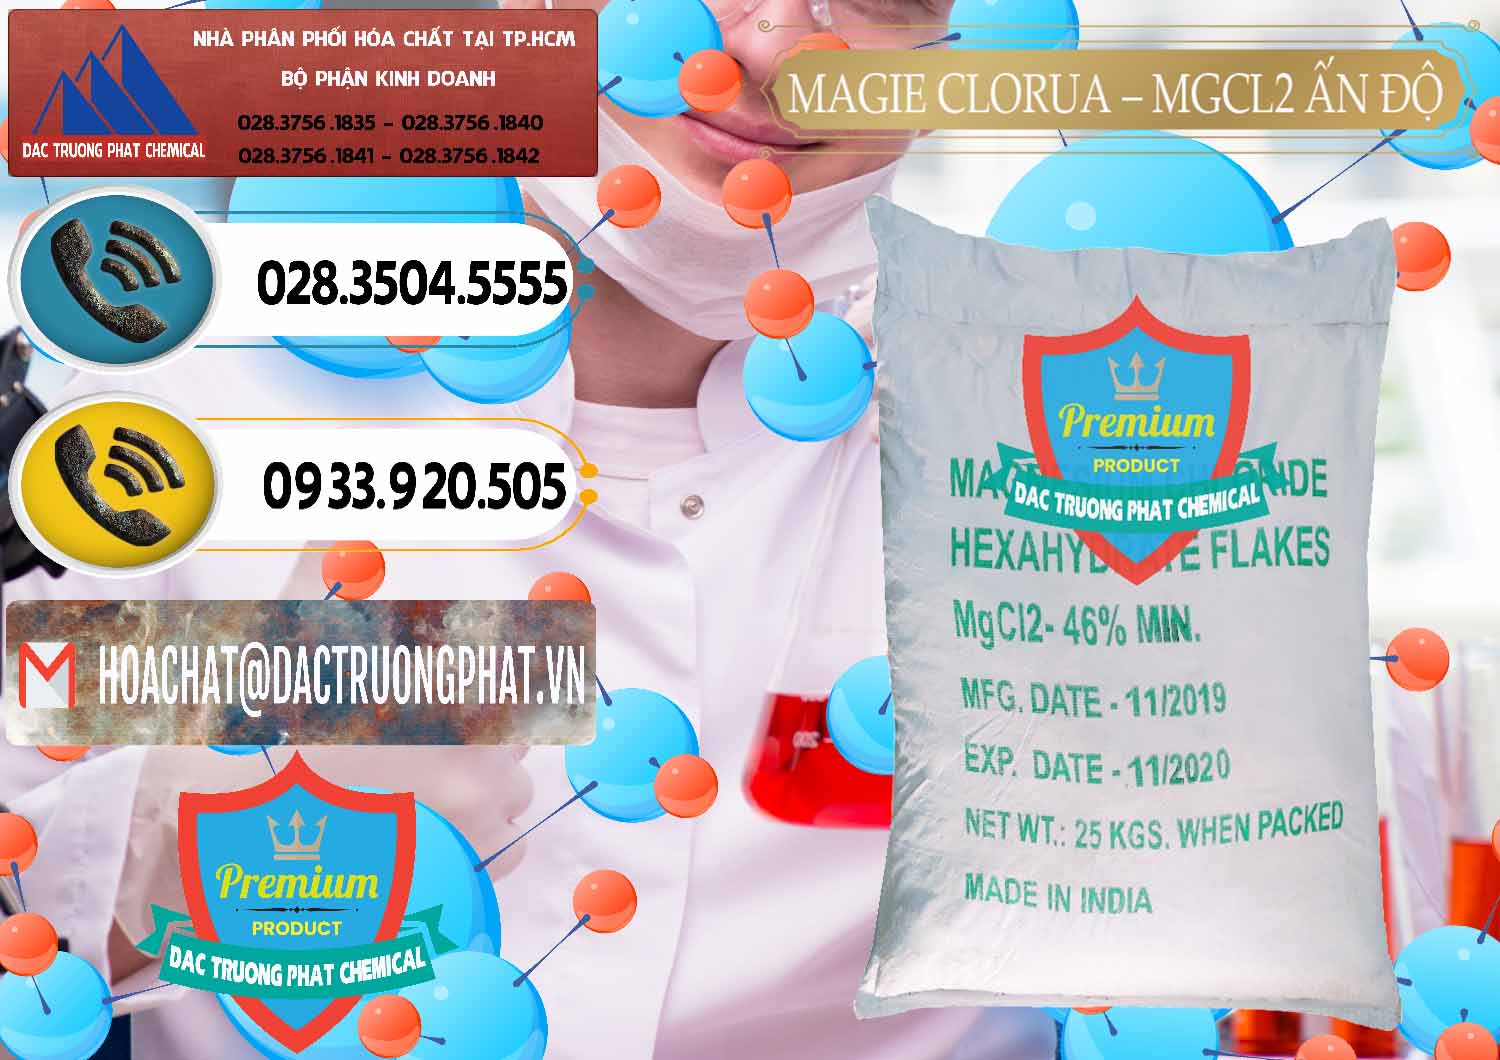 Cty chuyên bán - cung cấp Magie Clorua – MGCL2 46% Dạng Vảy Ấn Độ India - 0092 - Công ty chuyên phân phối - cung ứng hóa chất tại TP.HCM - hoachatdetnhuom.vn